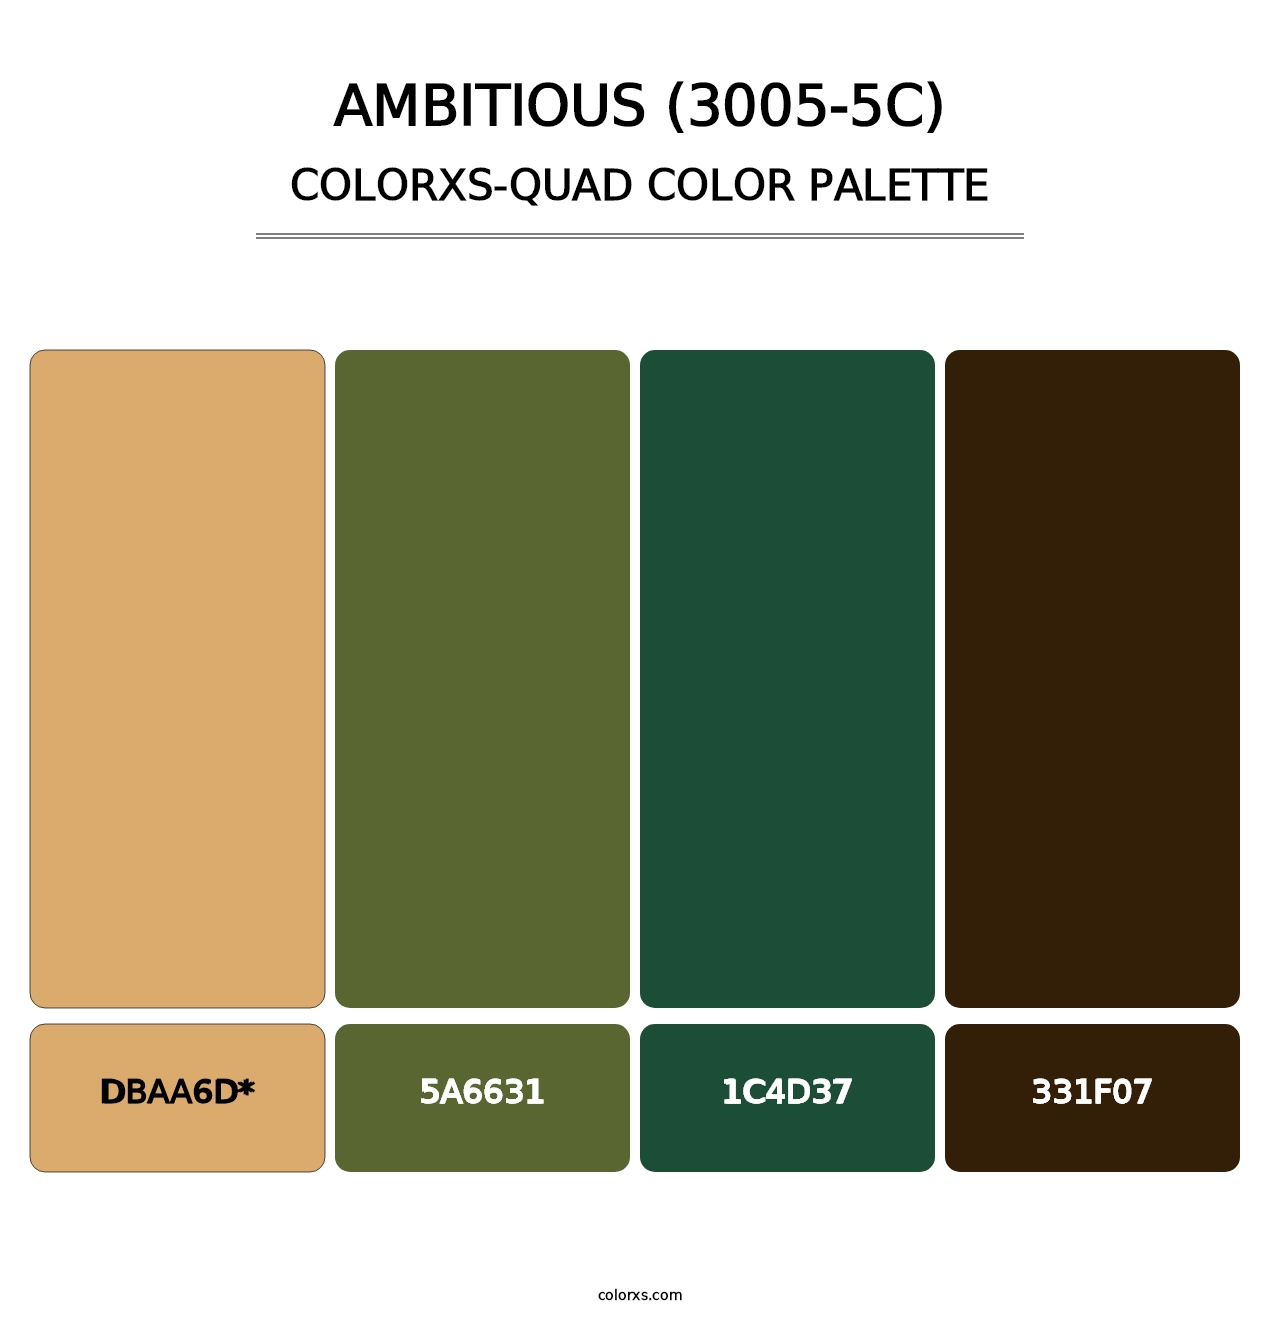 Ambitious (3005-5C) - Colorxs Quad Palette